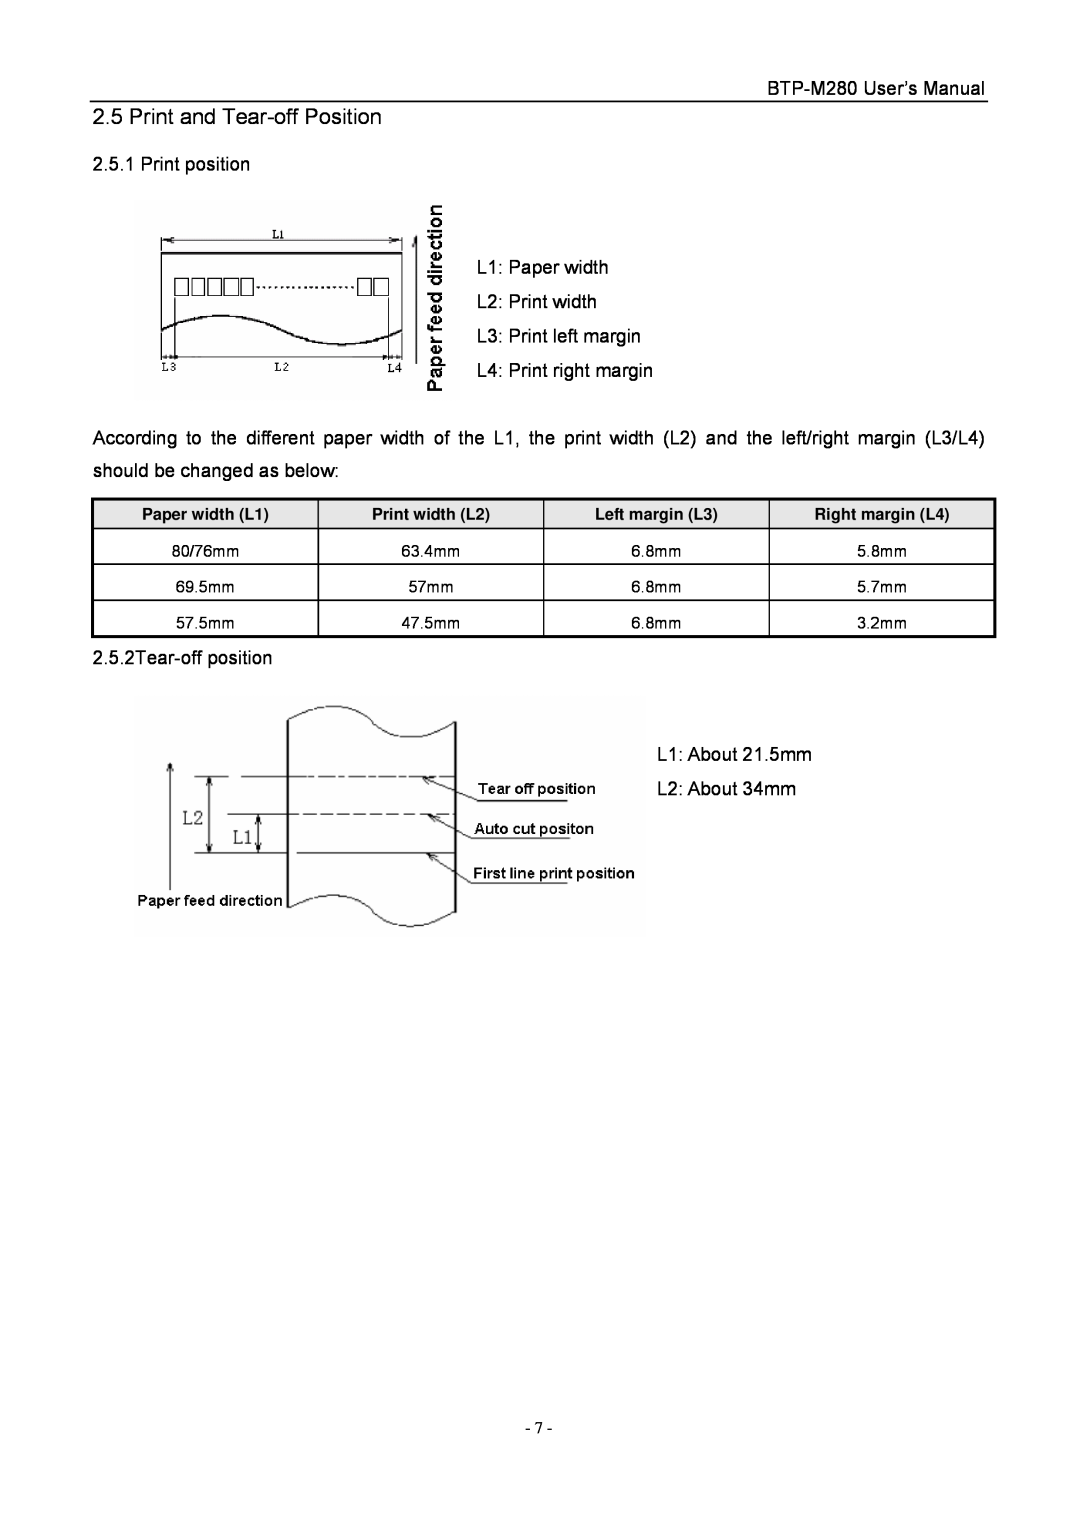 Jiaye General Merchandise Co BTP-M280 Print and Tear-off Position, Paper width L1, Print width L2, Left margin L3 